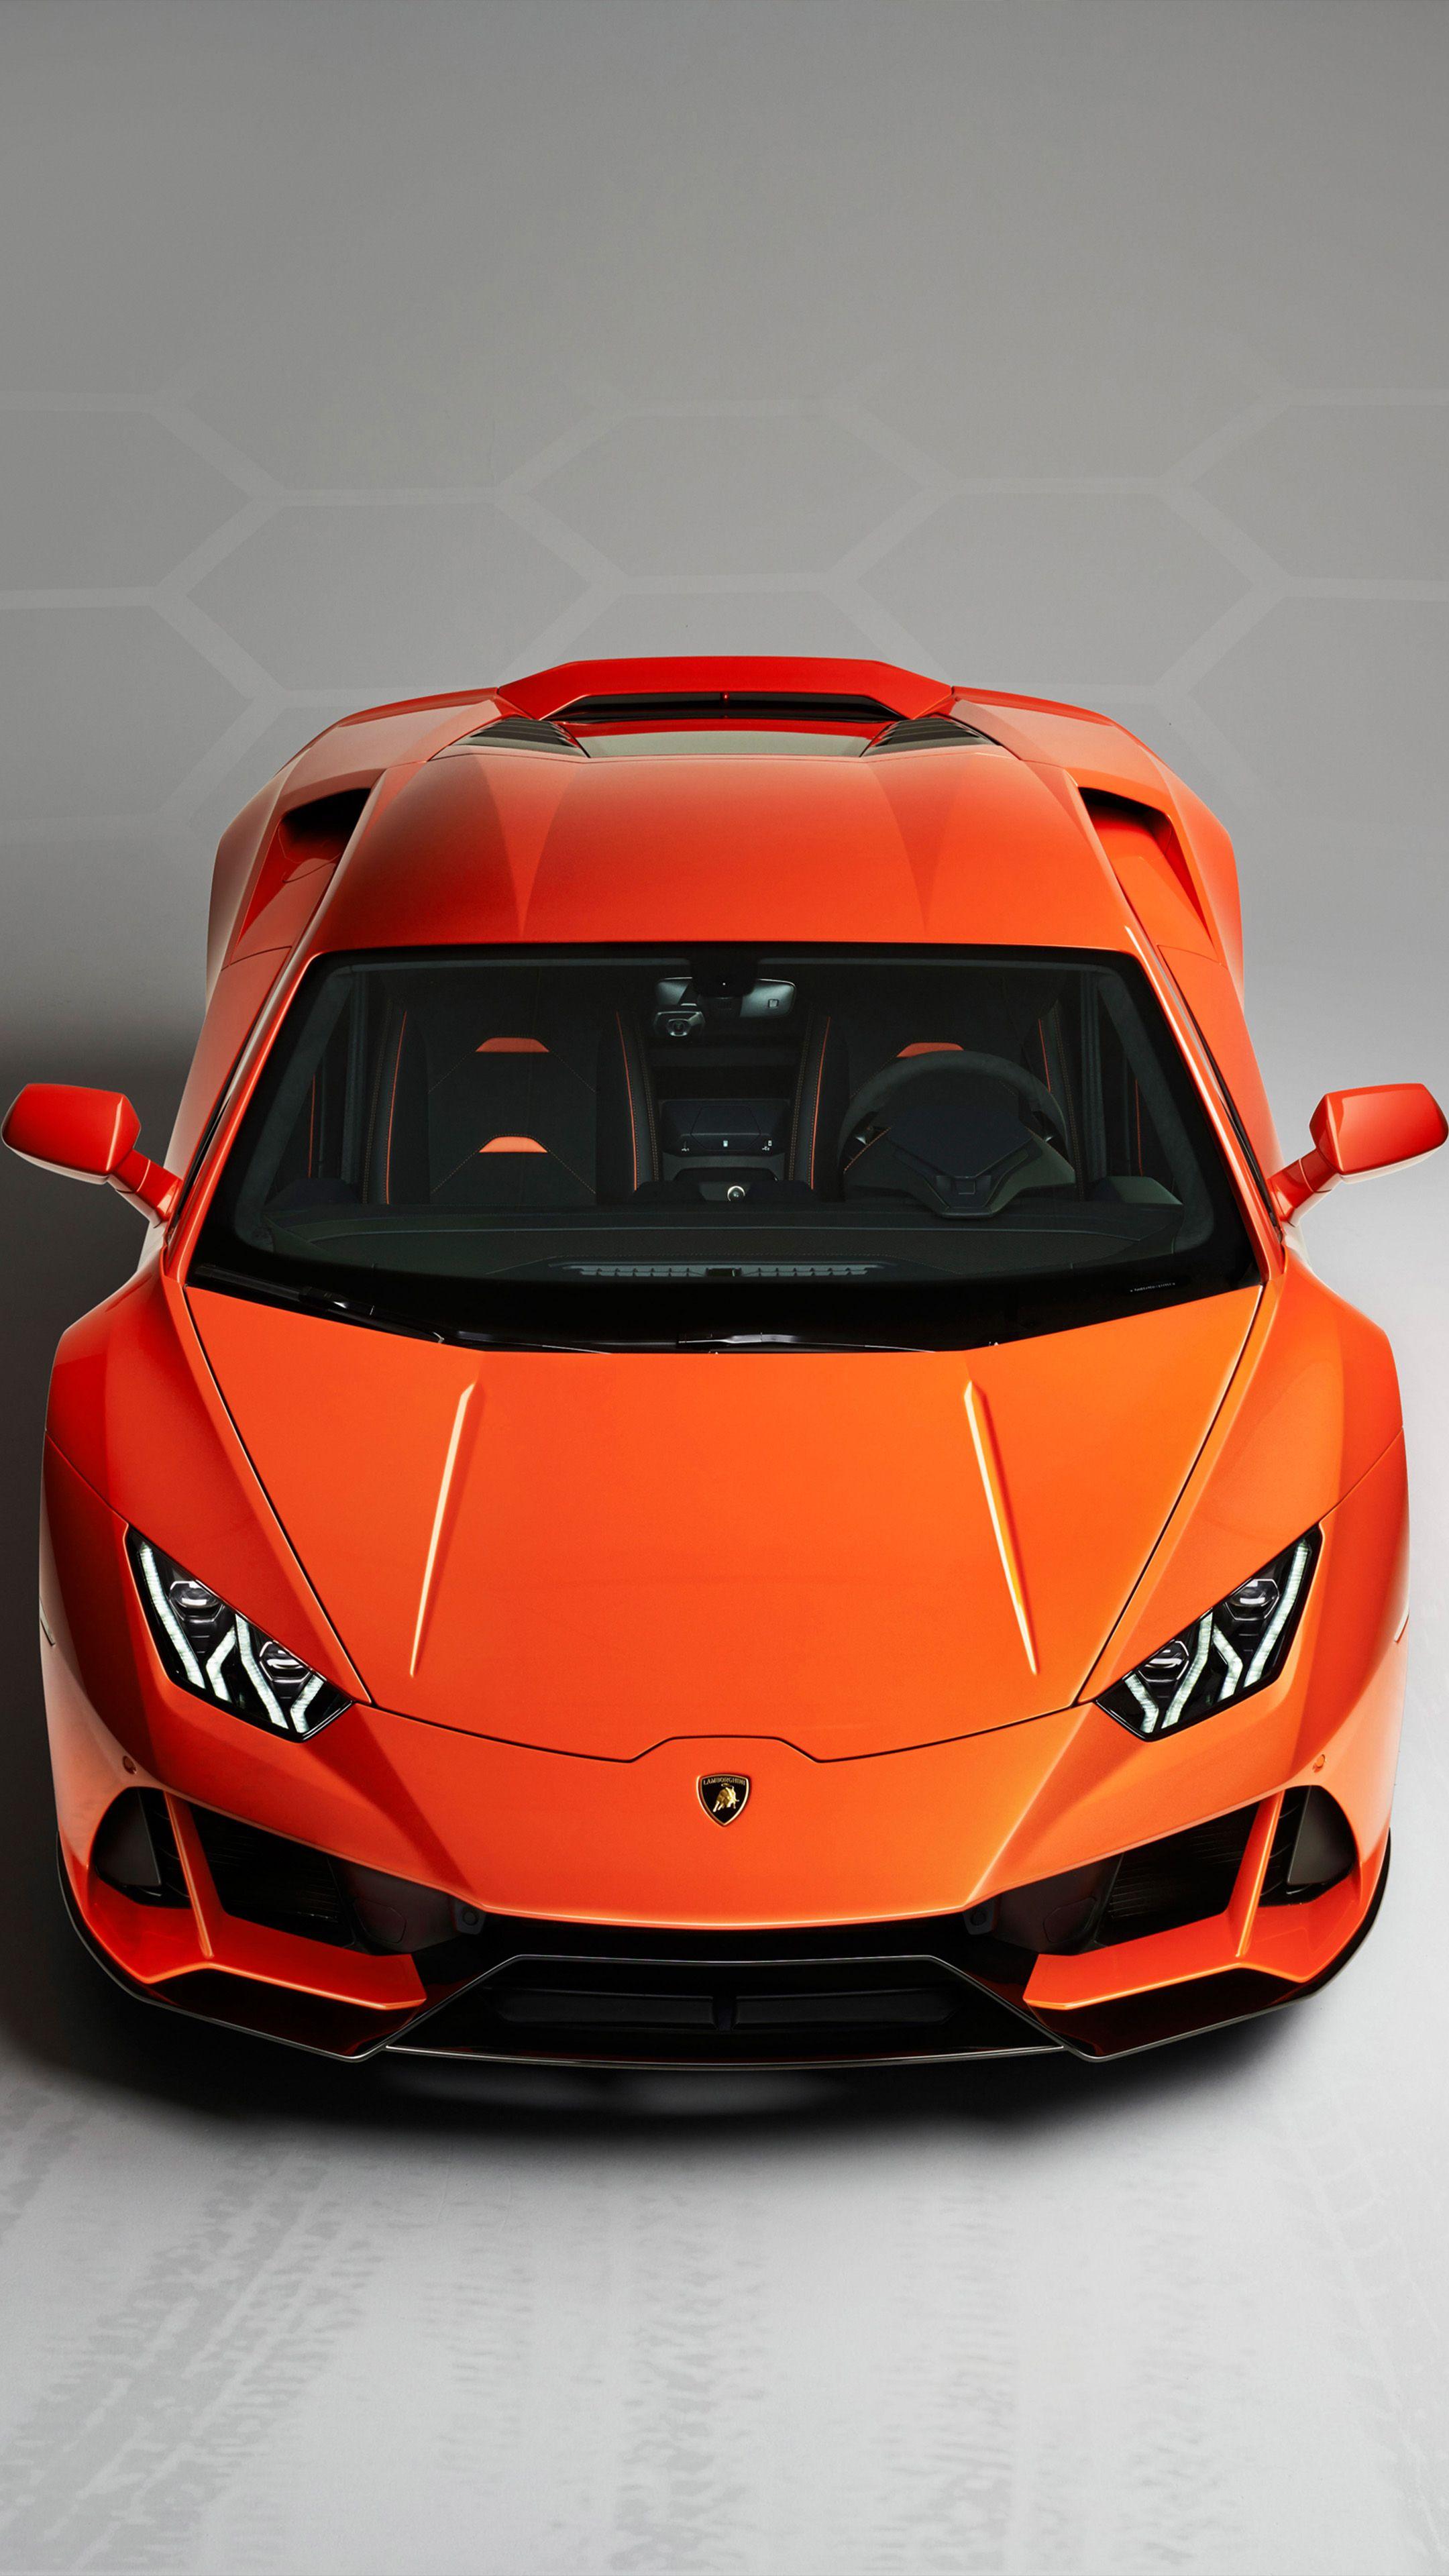 Lamborghini Huracan Evo 2019. Lamborghini huracan, Super cars